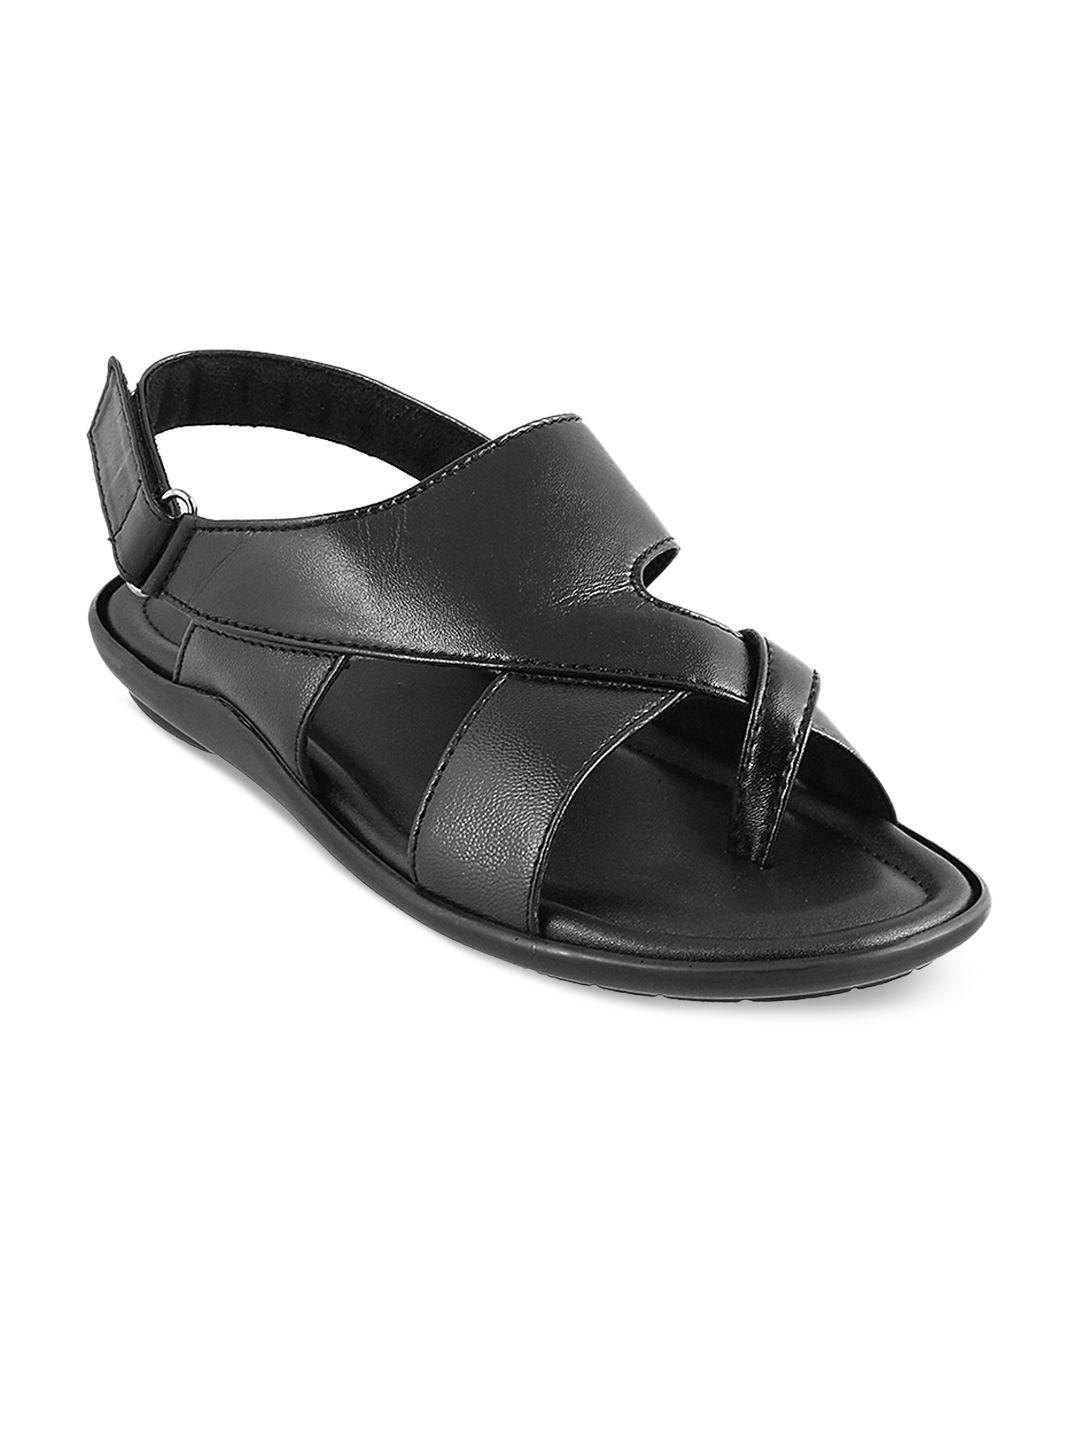 mochi men black comfort leather sandals